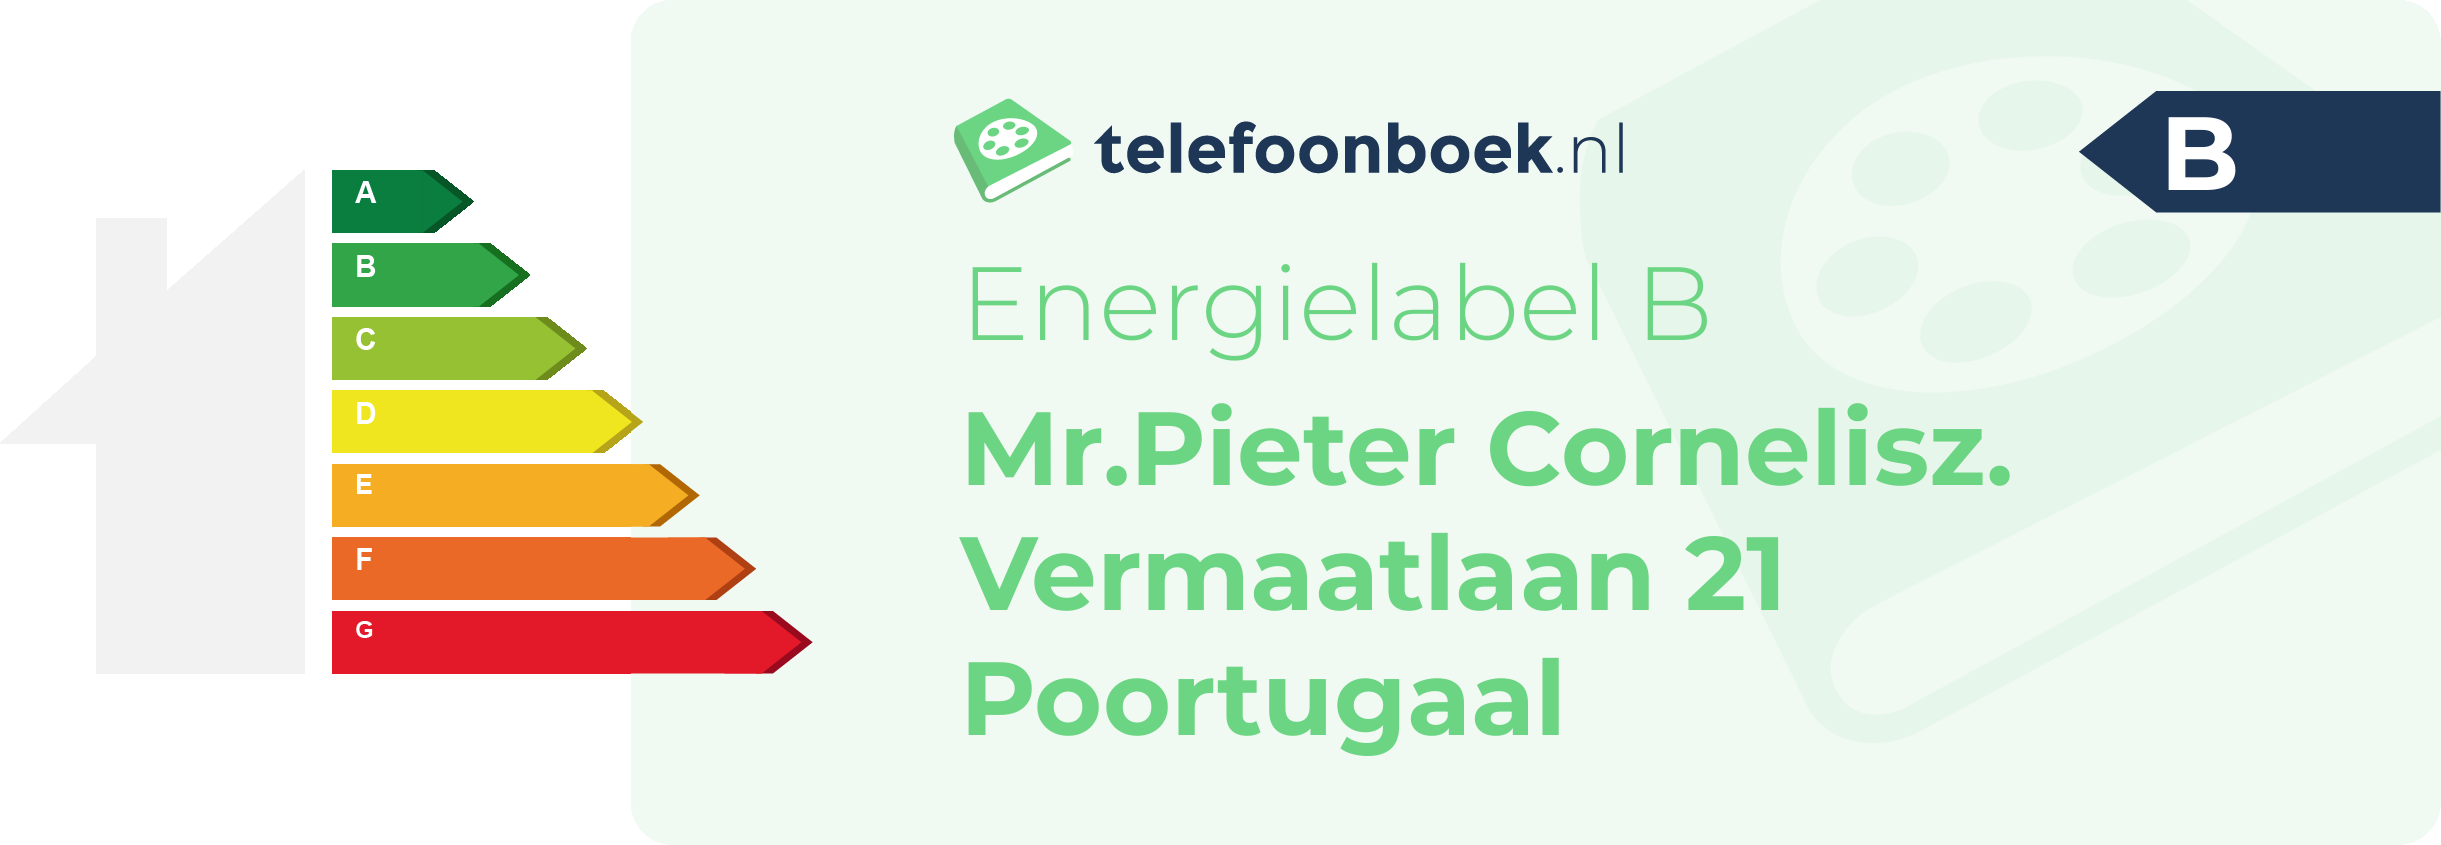 Energielabel Mr.Pieter Cornelisz. Vermaatlaan 21 Poortugaal